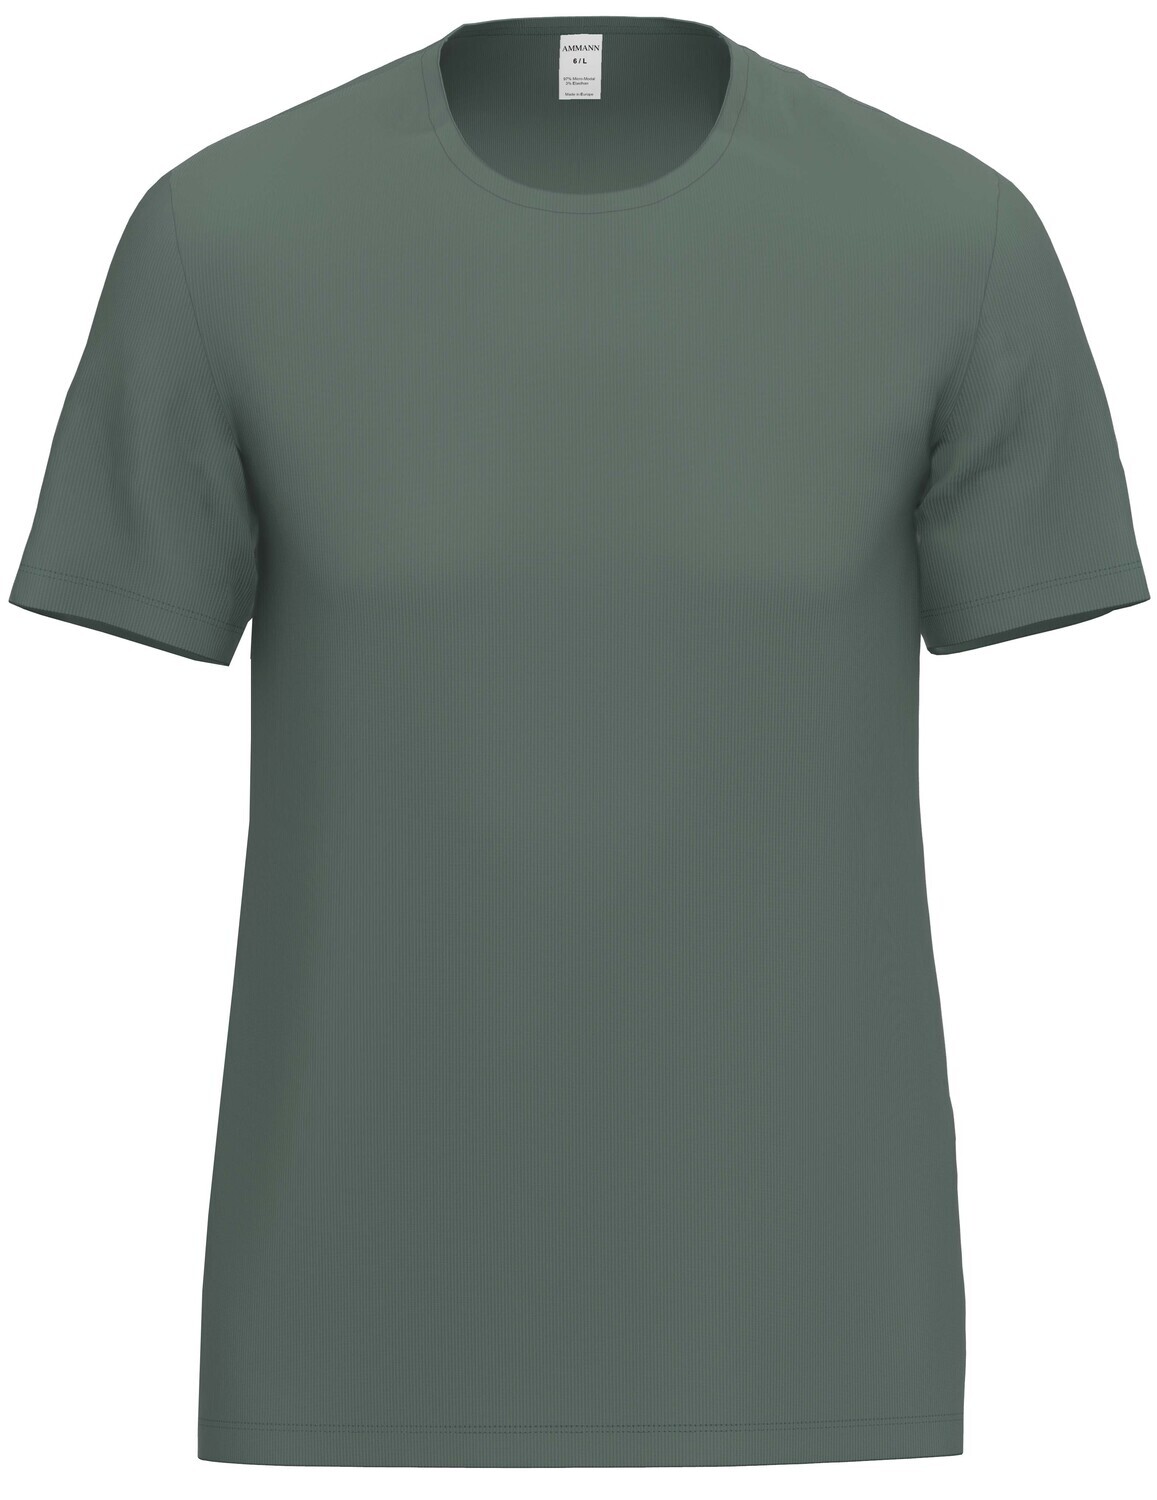 Ammann Heren T-shirt: Tencel, groen ( Ideaal om te slapen, los te dragen )